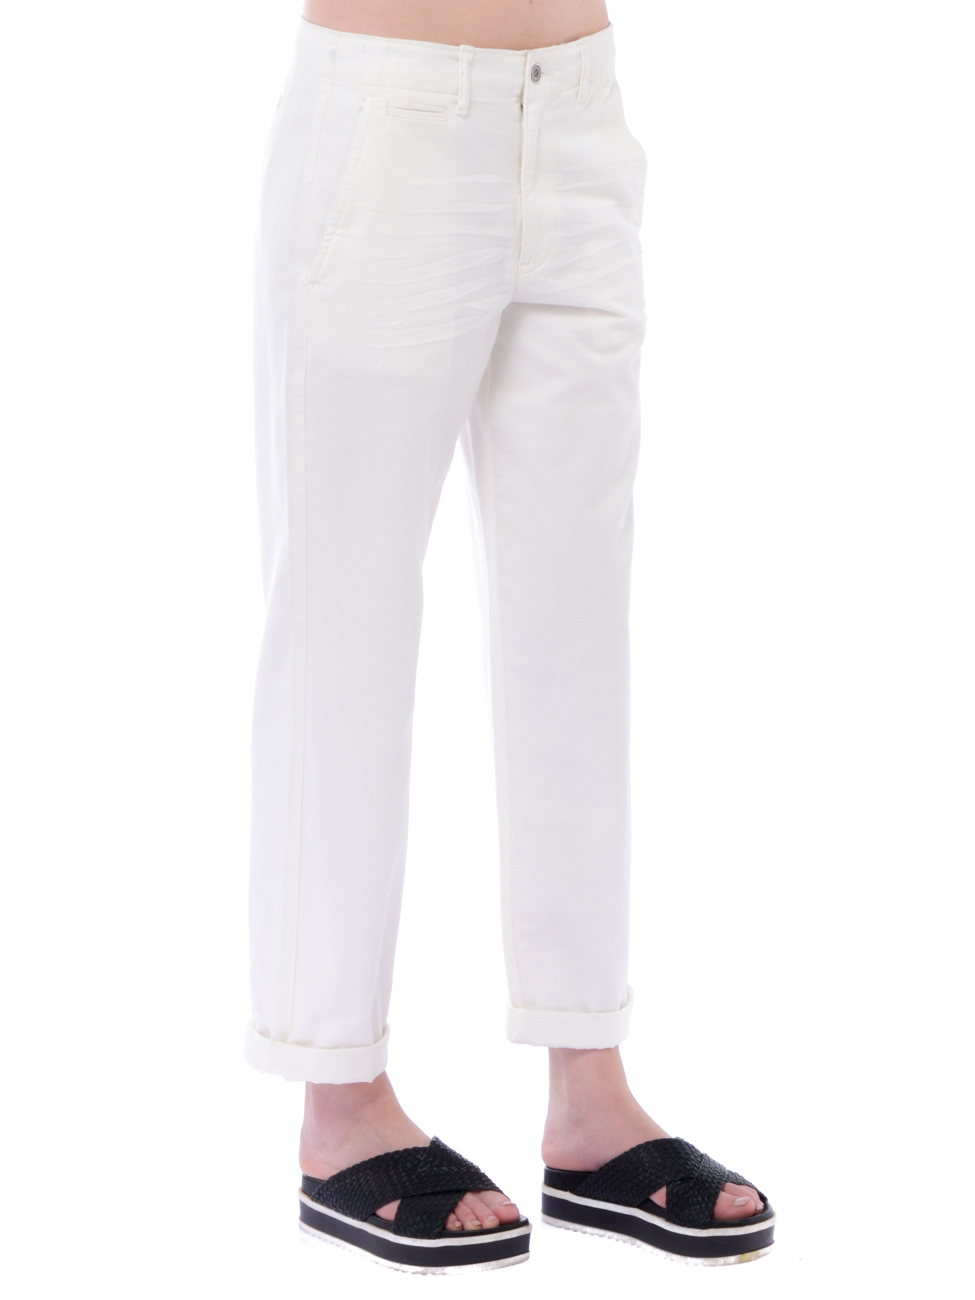 Pantalone donna Ralph Lauren in cotone modello chino